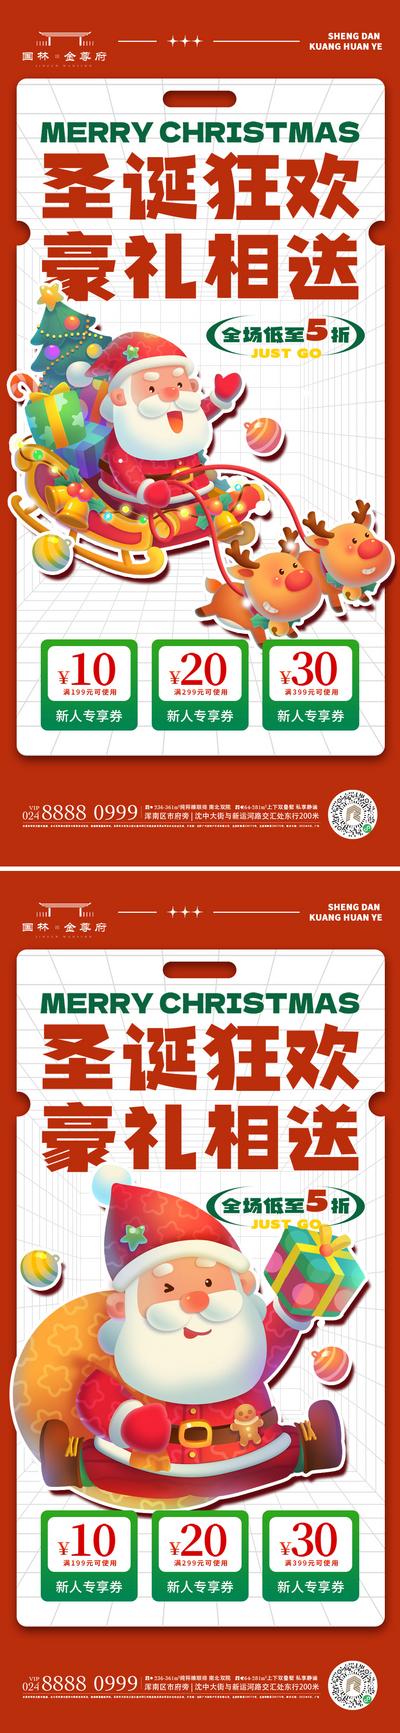 【南门网】广告 海报 节日 圣诞节 圣诞老人 圣诞树 礼物 圣诞狂欢 圣诞礼物 盲盒 圣诞袜 平安夜 苹果 秒杀 打折 系列